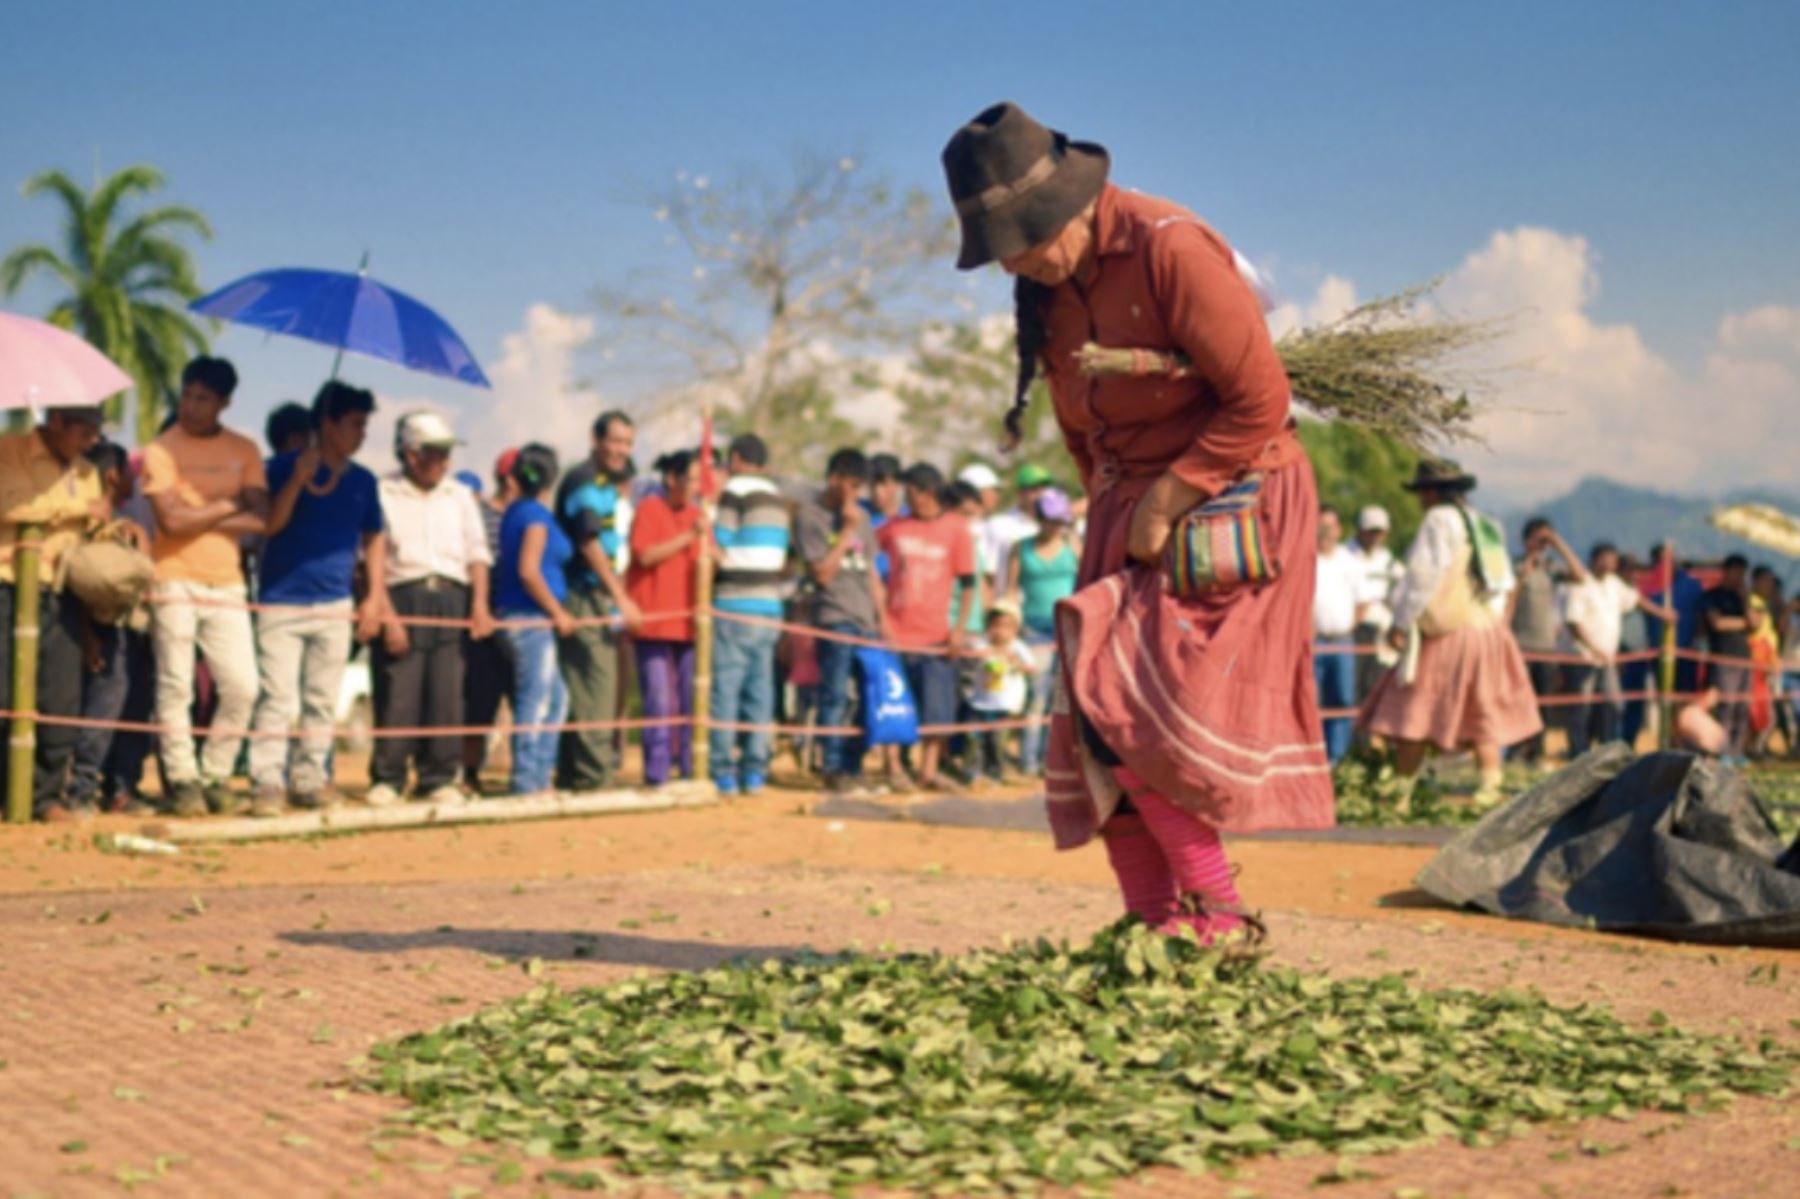 Devida e INEI elaboraron el “Informe sobre la demanda de hoja de coca para fines tradicionales e industriales”. Foto: ANDINA/Difusión